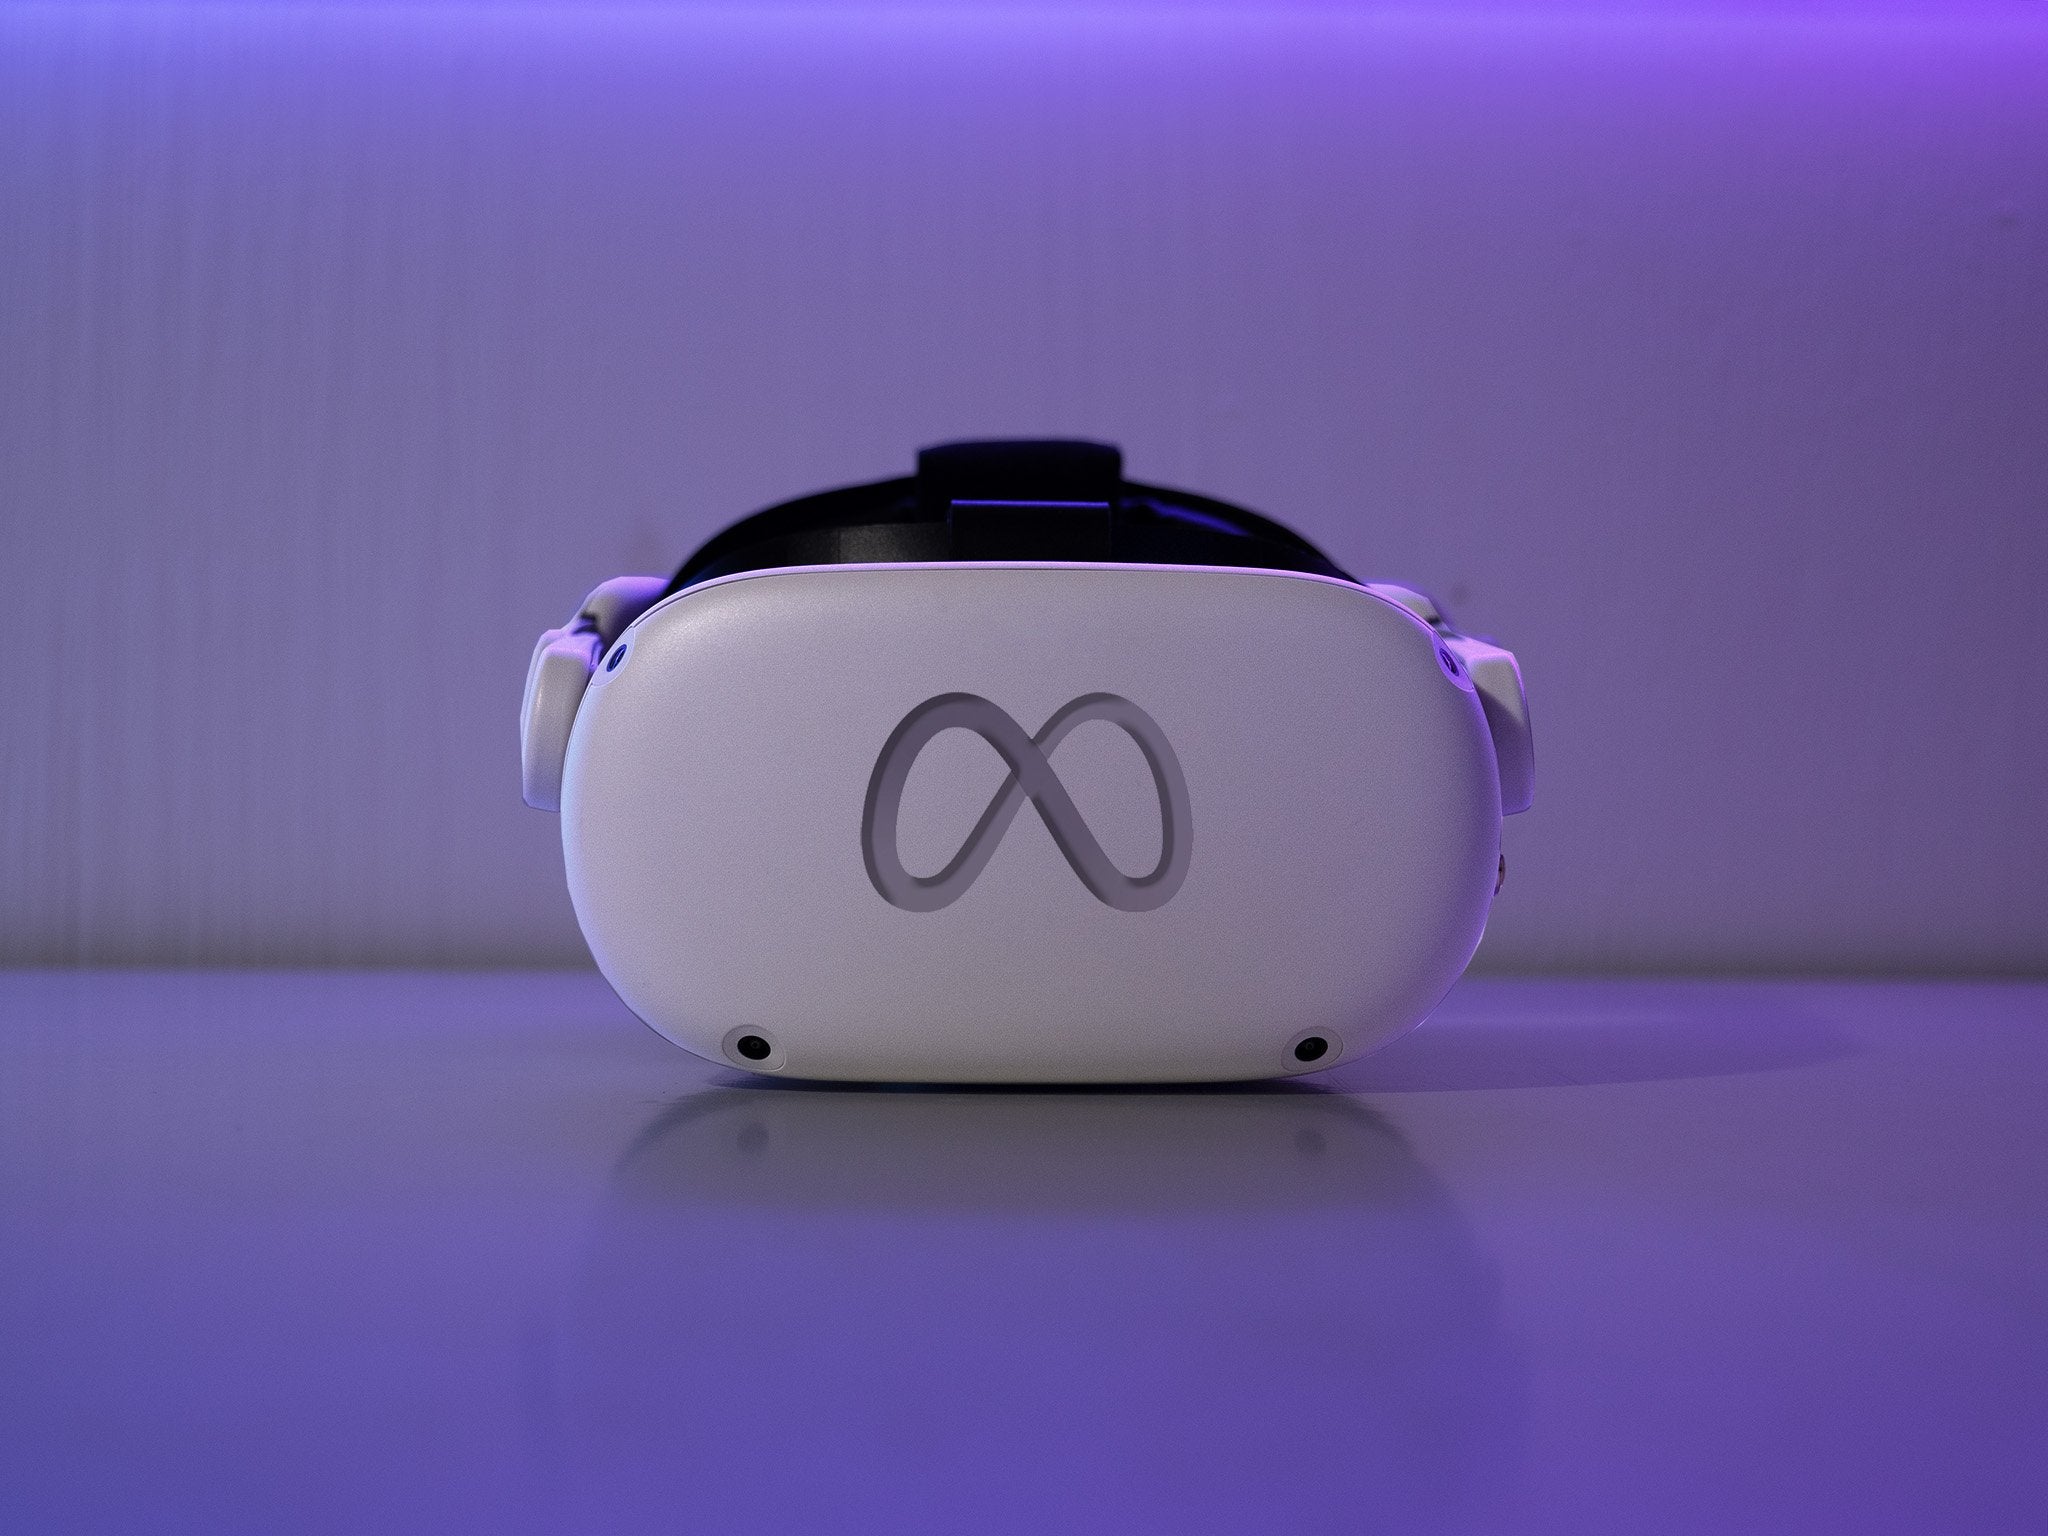 Imagem para Capacete VR Meta Quest 2 vai ficar 100 dólares mais caro